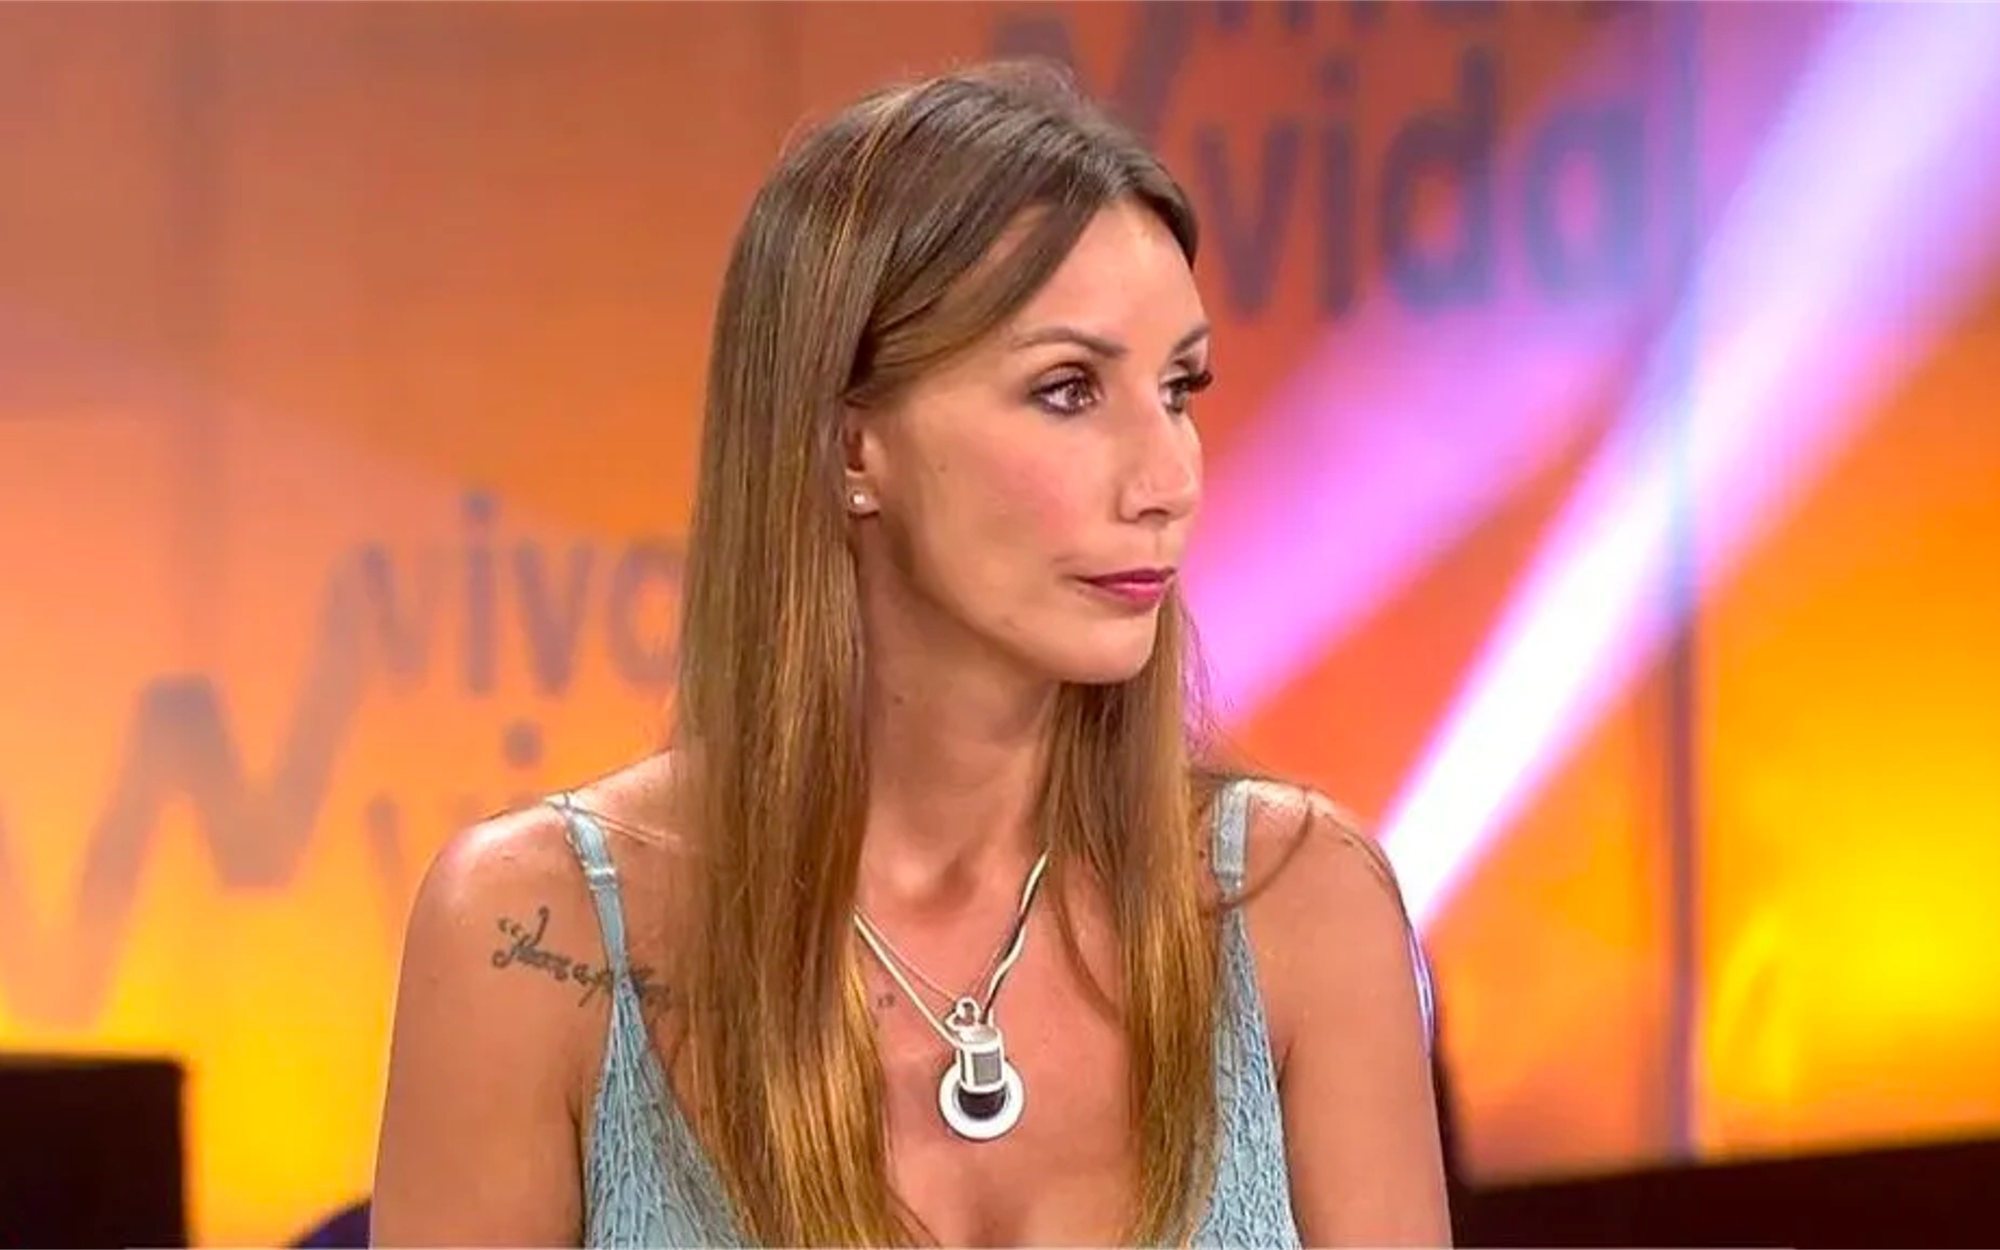 La dura bronca de Toñi Moreno a Avilés: "¿Por qué tenemos que recordarle a Fani esa mierda una y otra vez?"